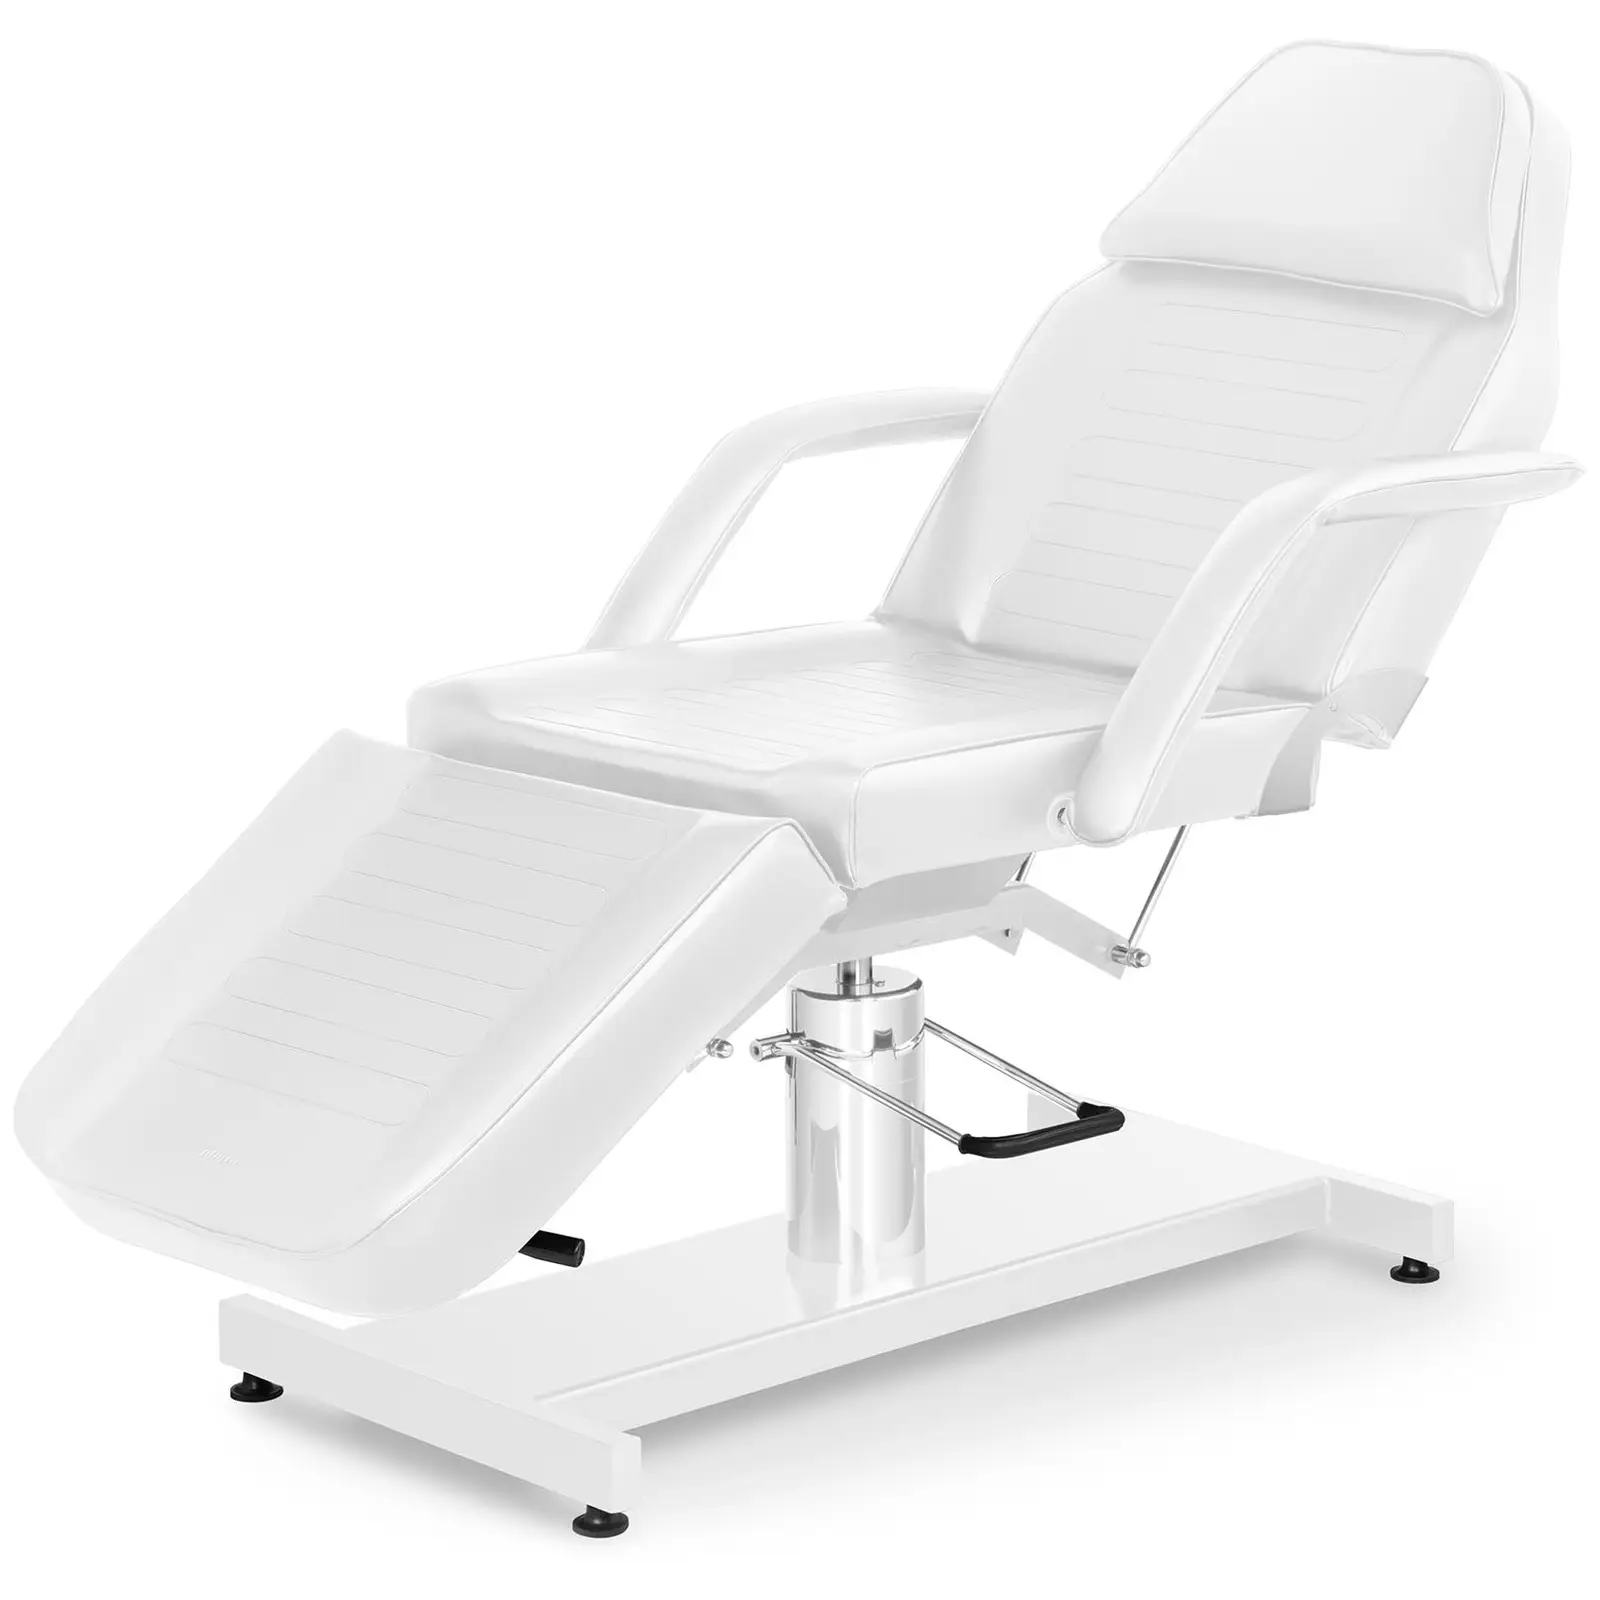 Cadeira para cosmética - 185.5 x 105.7 x 144 cm - 200 kg - Branco